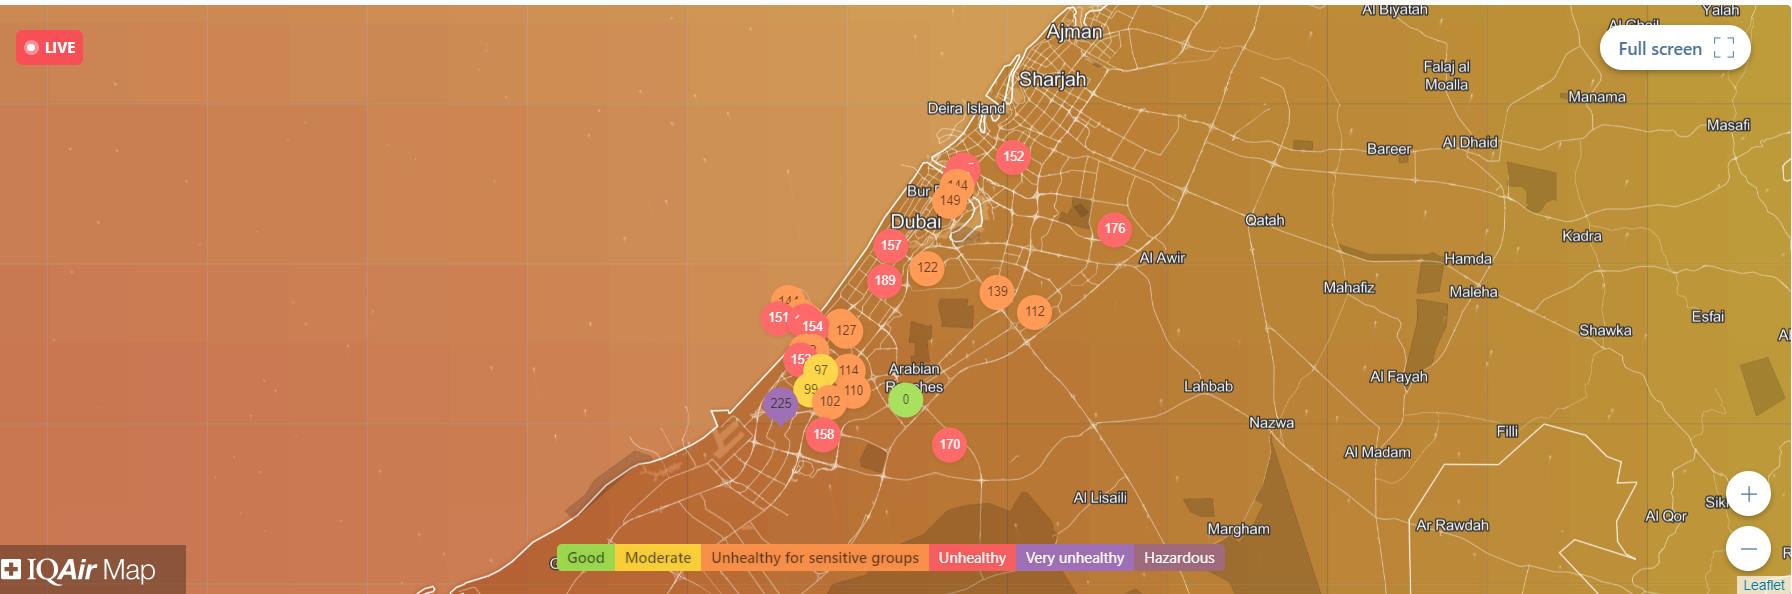 Данные по качеству воздуха с разных датчиков в Дубае в реальном времени. Сайт https://www.iqair.com 